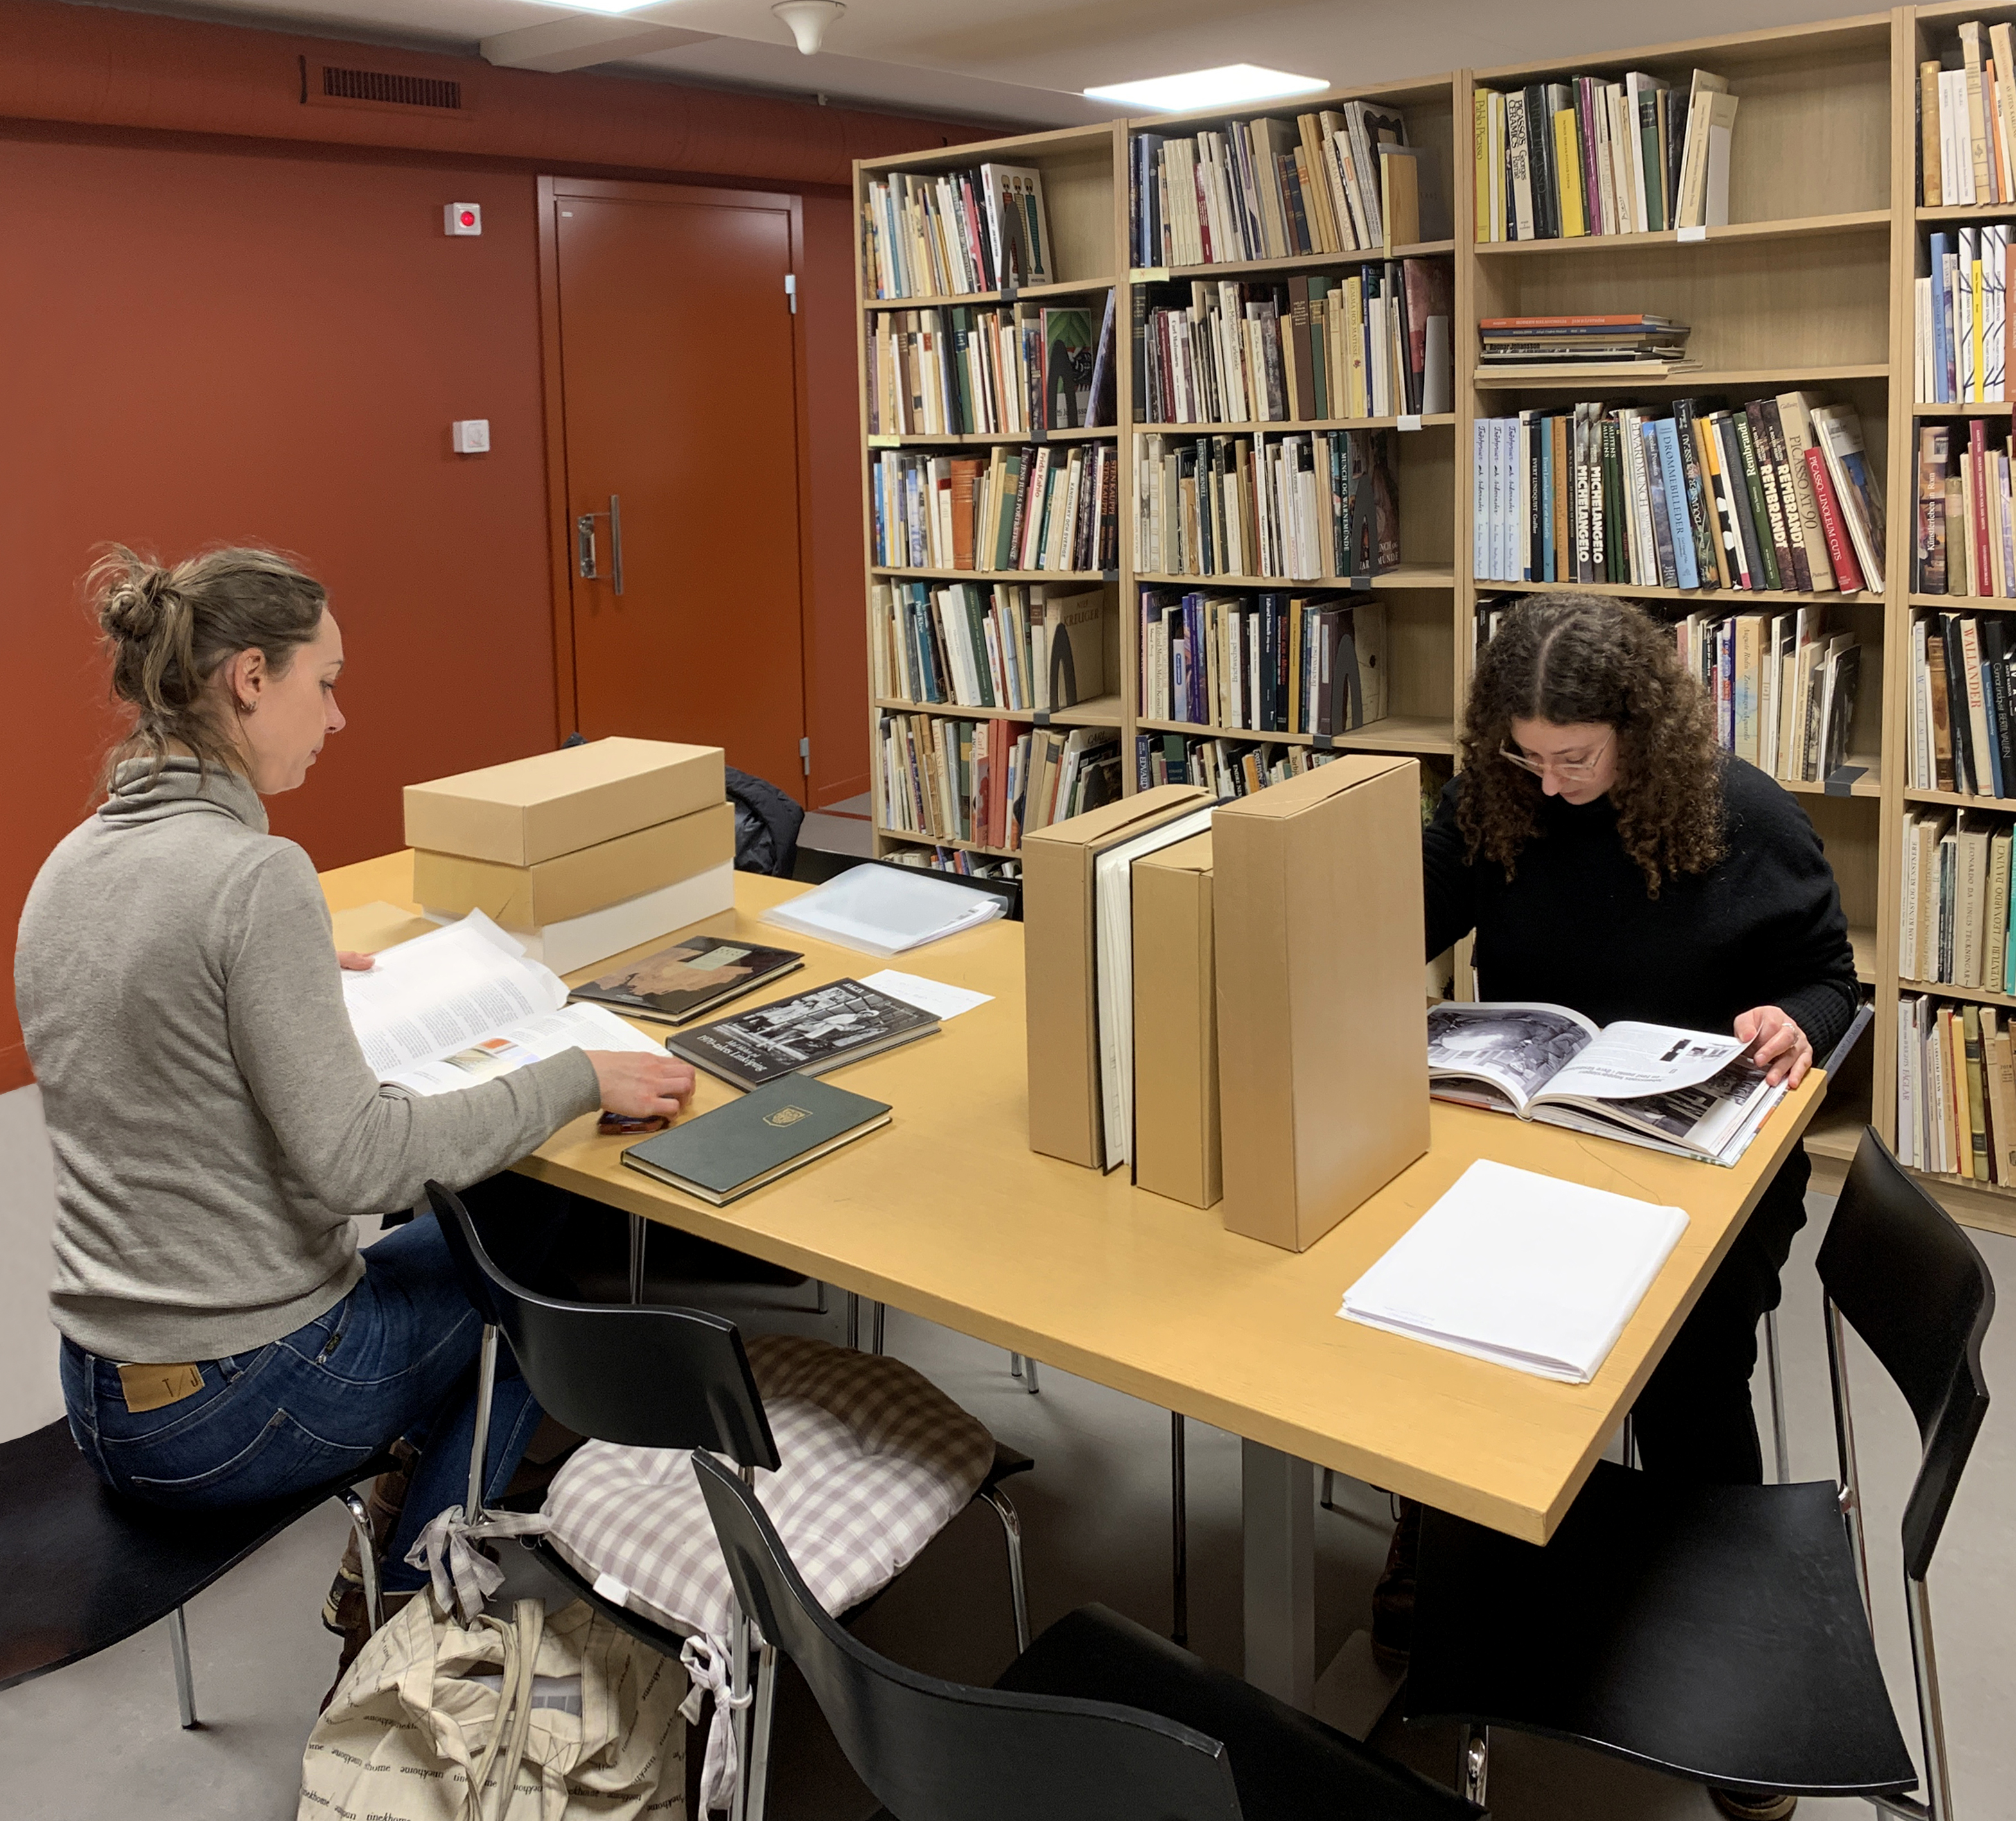 Två arkivanvändare sitter med handlingar och böcker i biblioteket